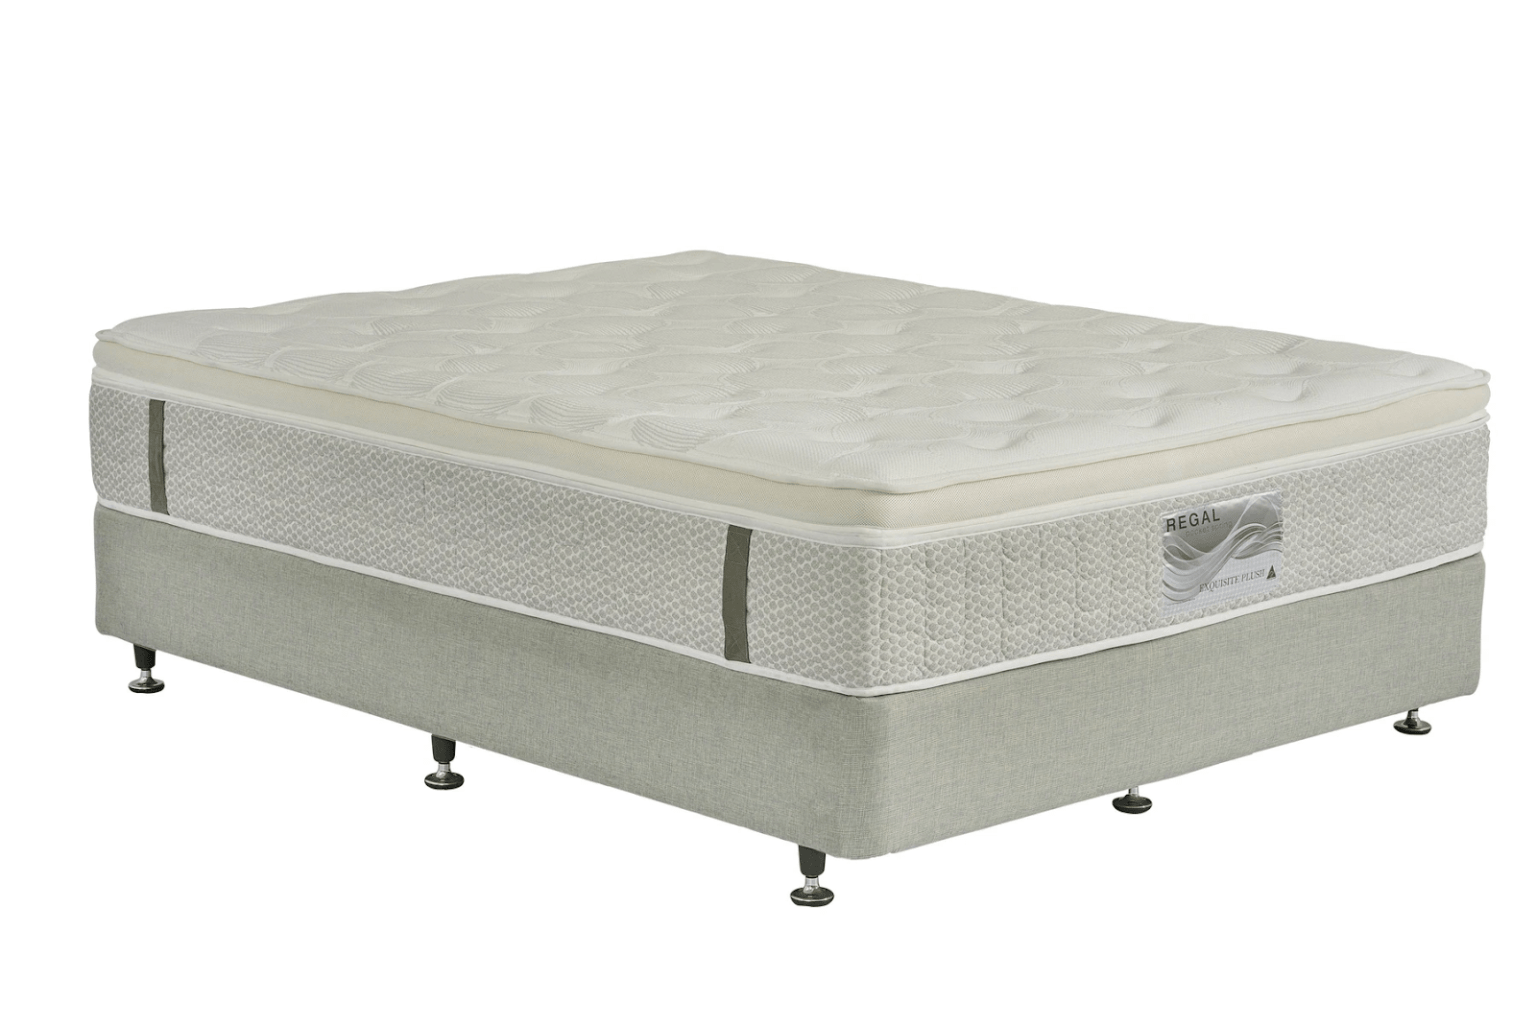 regal splendor mattress reviews